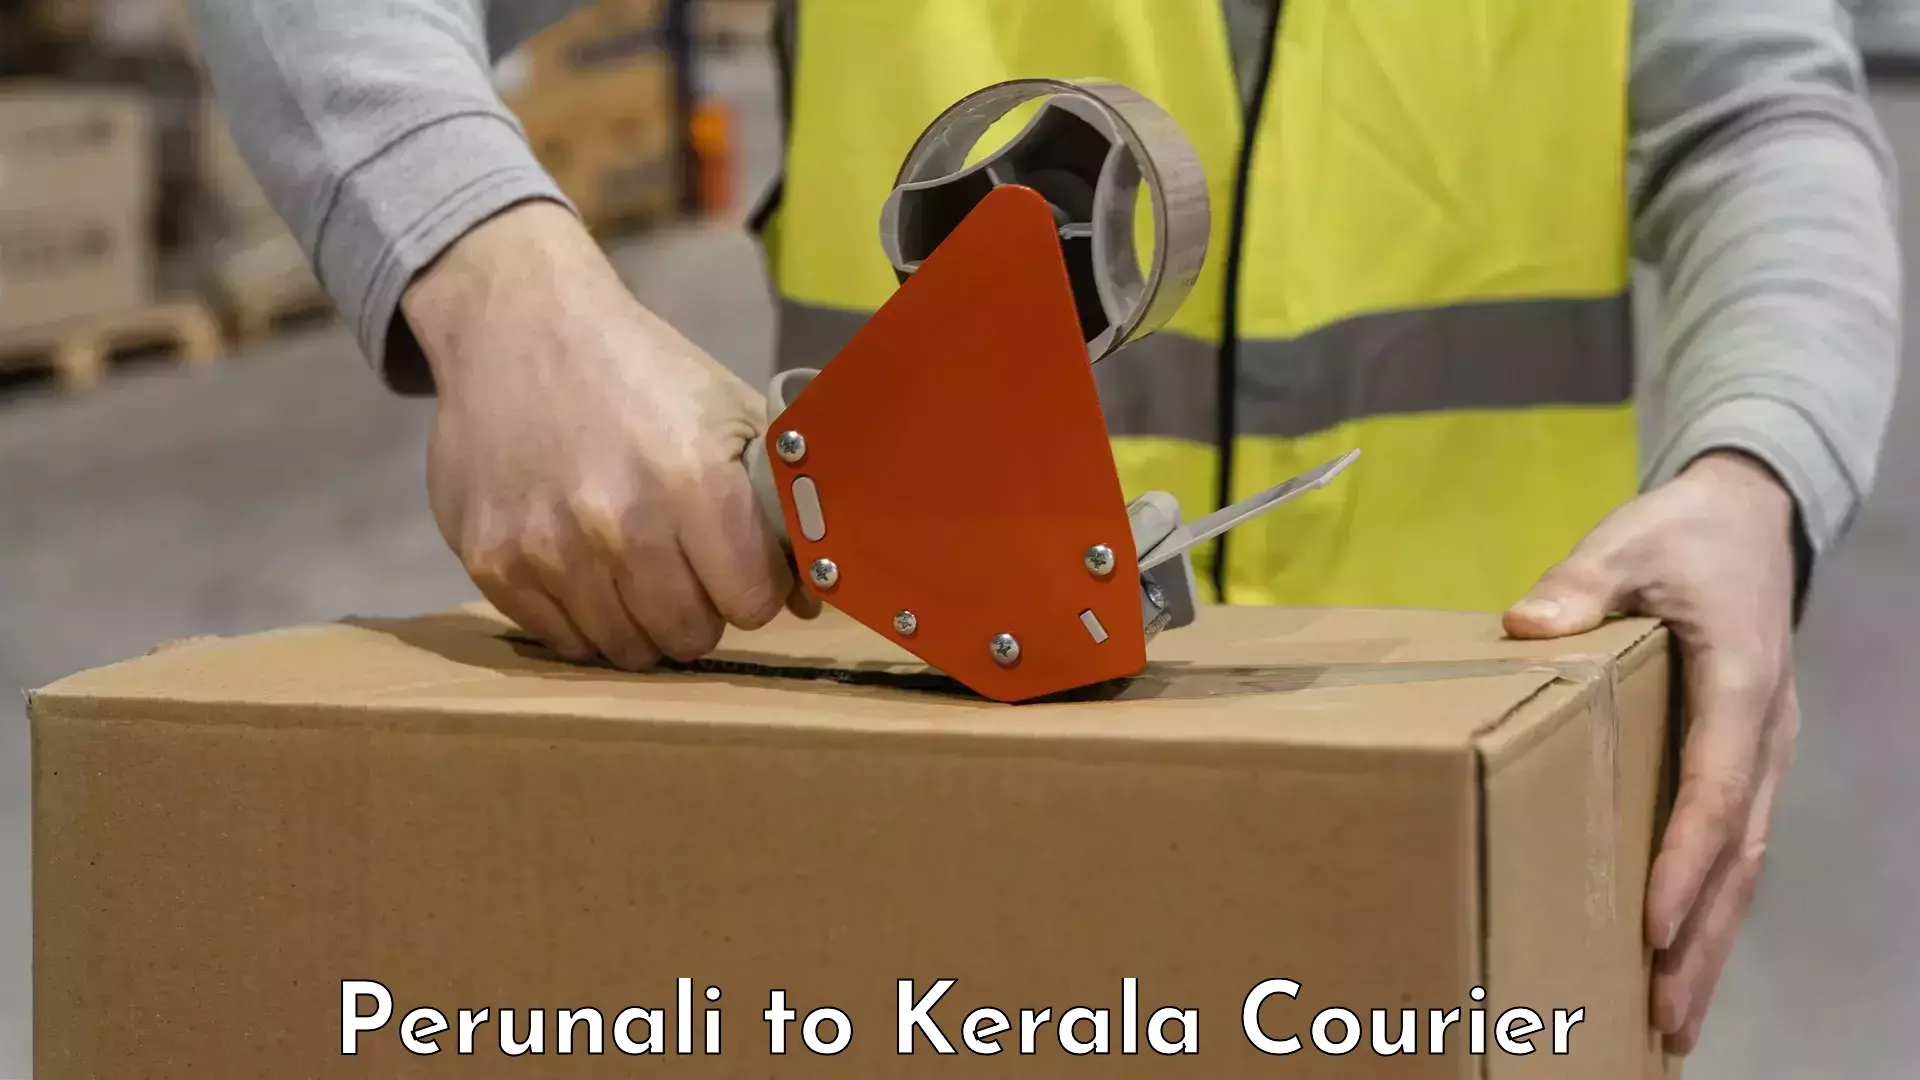 Artwork baggage courier Perunali to Kerala